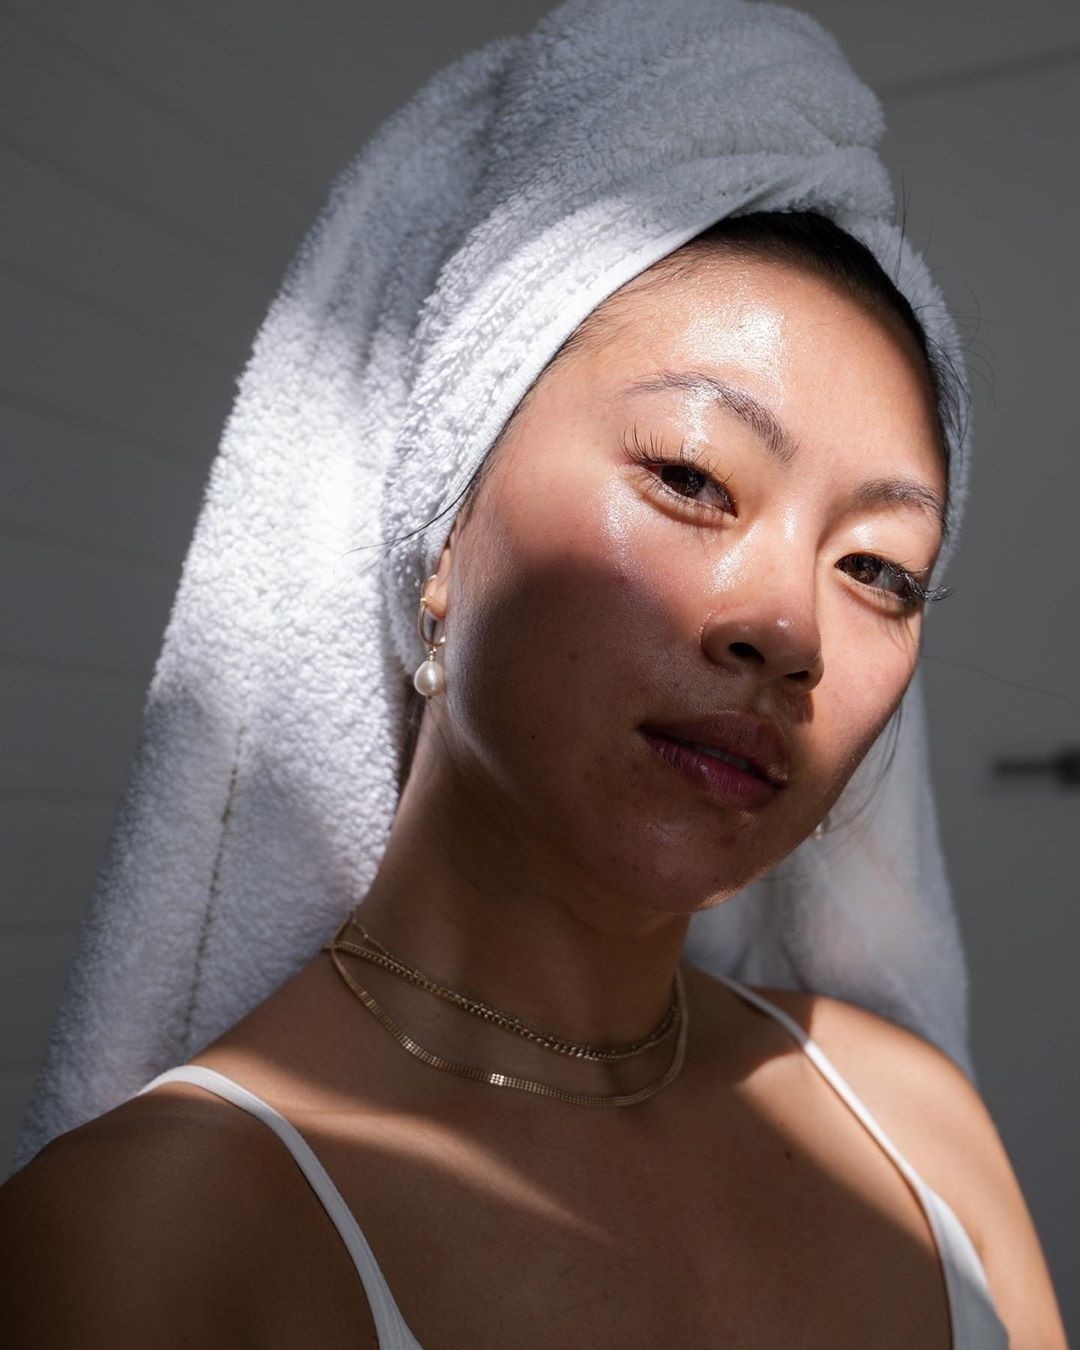 A influenciadora Christine Le mostra pele com acne no Instagram da marca Blume (Foto: reprodução Instagram @blume)